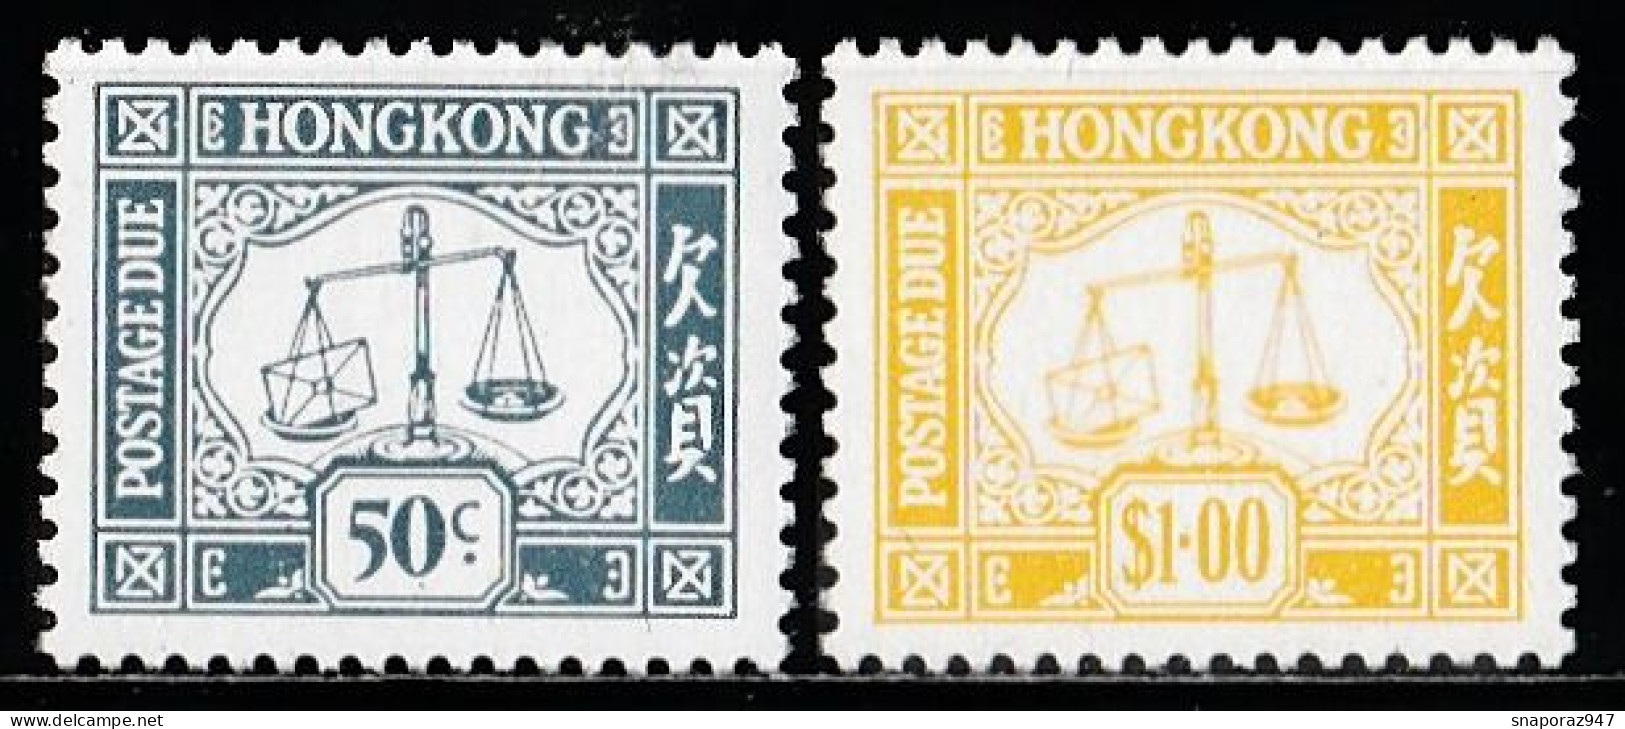 1986 Hong Kong Timbre Taxe Set MNH** Ta1 - Ongebruikt